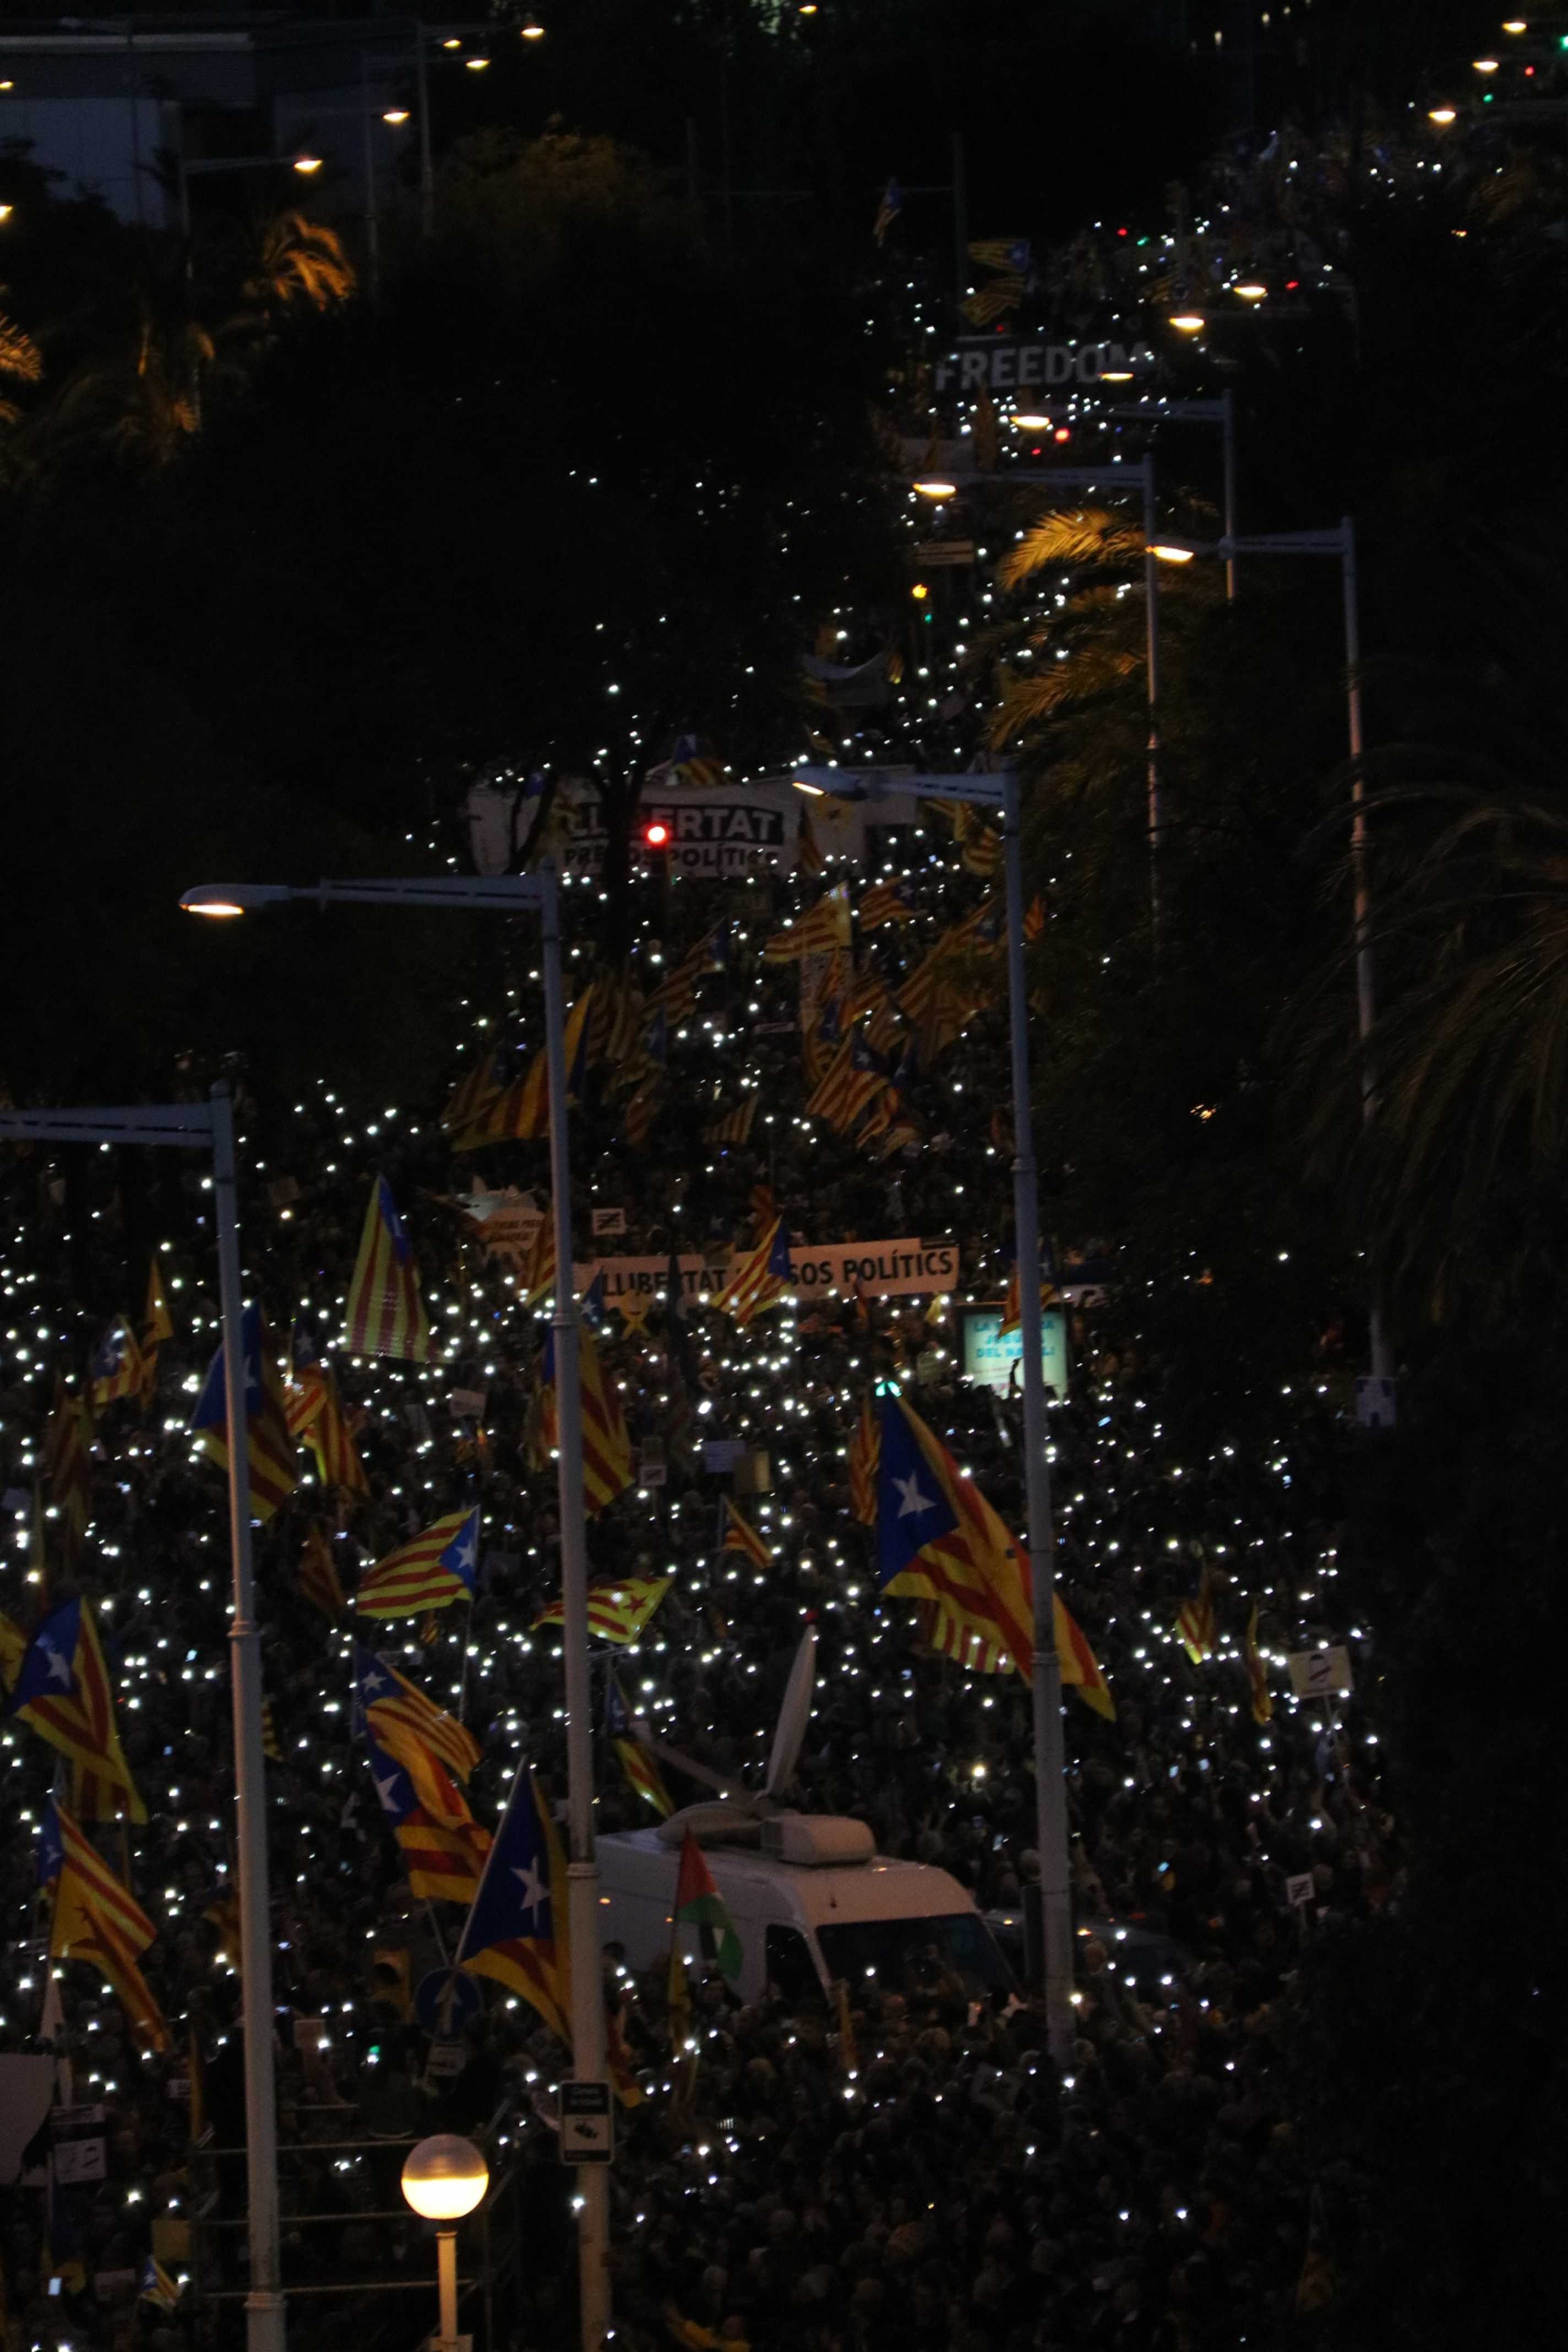 "Los catalanes andamos"